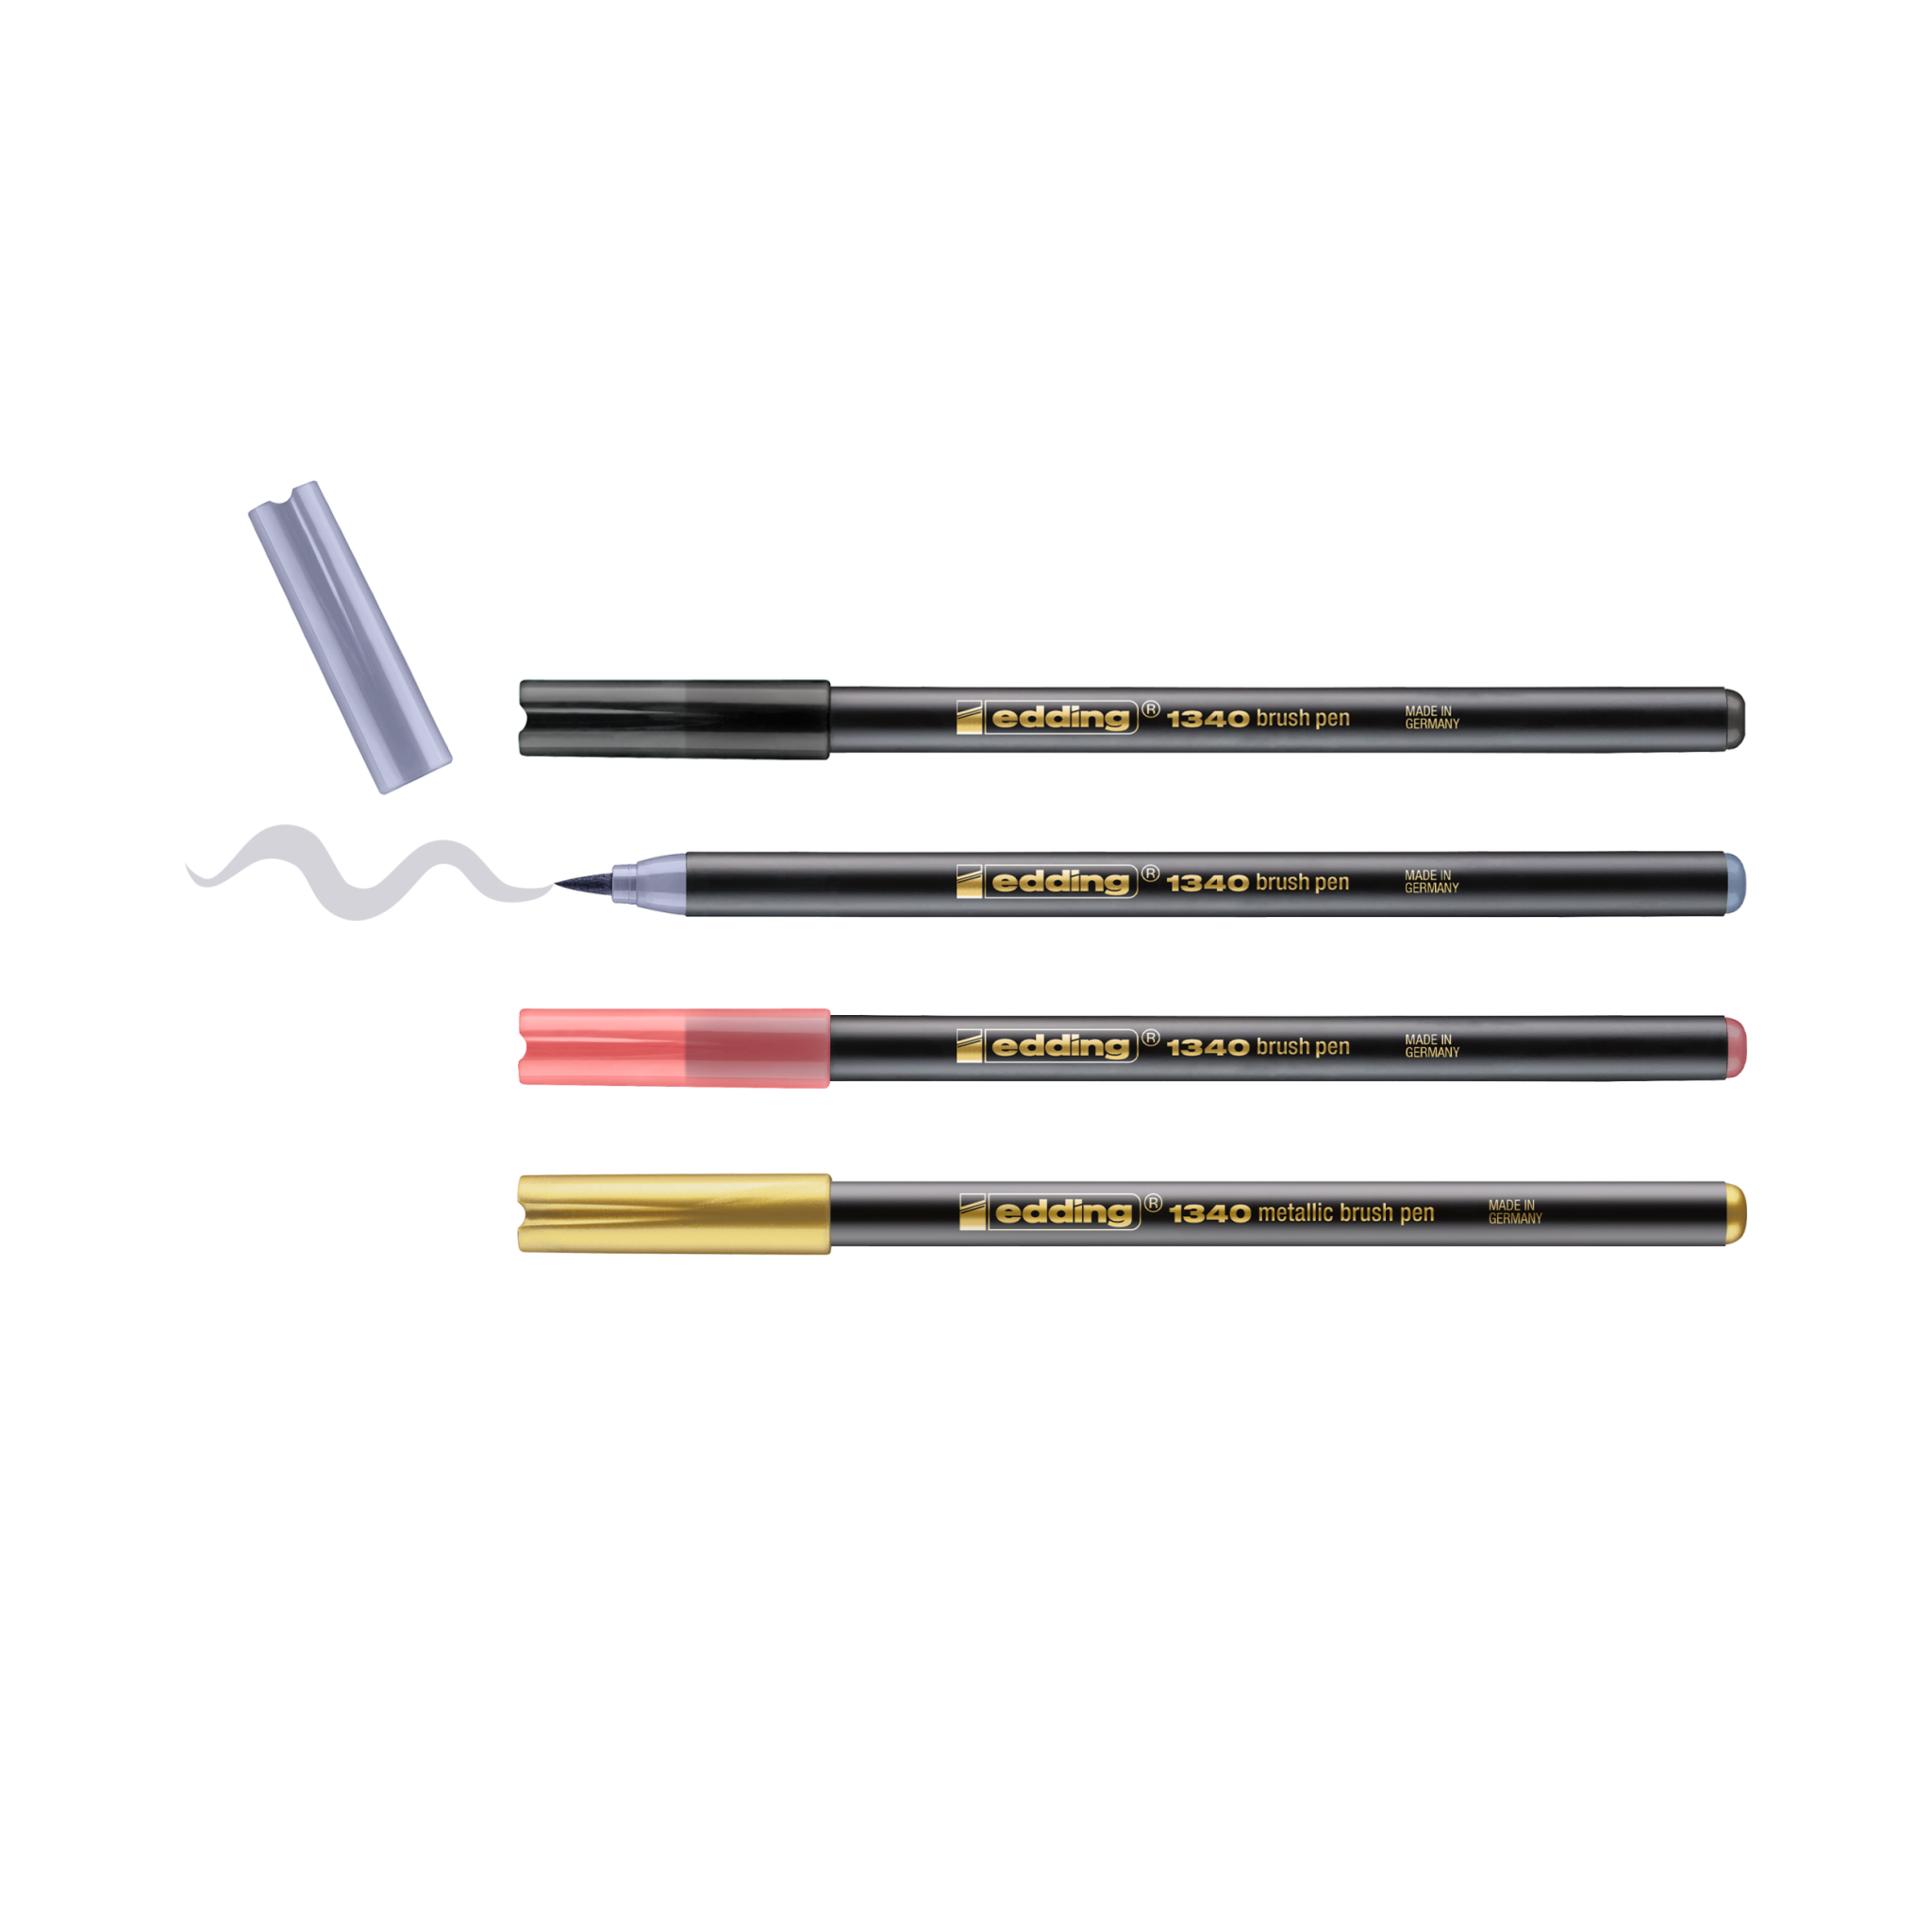 Eine Sammlung von edding 1340 metallic Pinselstiften im 4er-Set. Mix-Pinselstifte in verschiedenen Farben für Handlettering, jede Kappe neben dem jeweiligen Pinselstift, mit einer Demonstration der Strichvariabilität der Pinselspitze